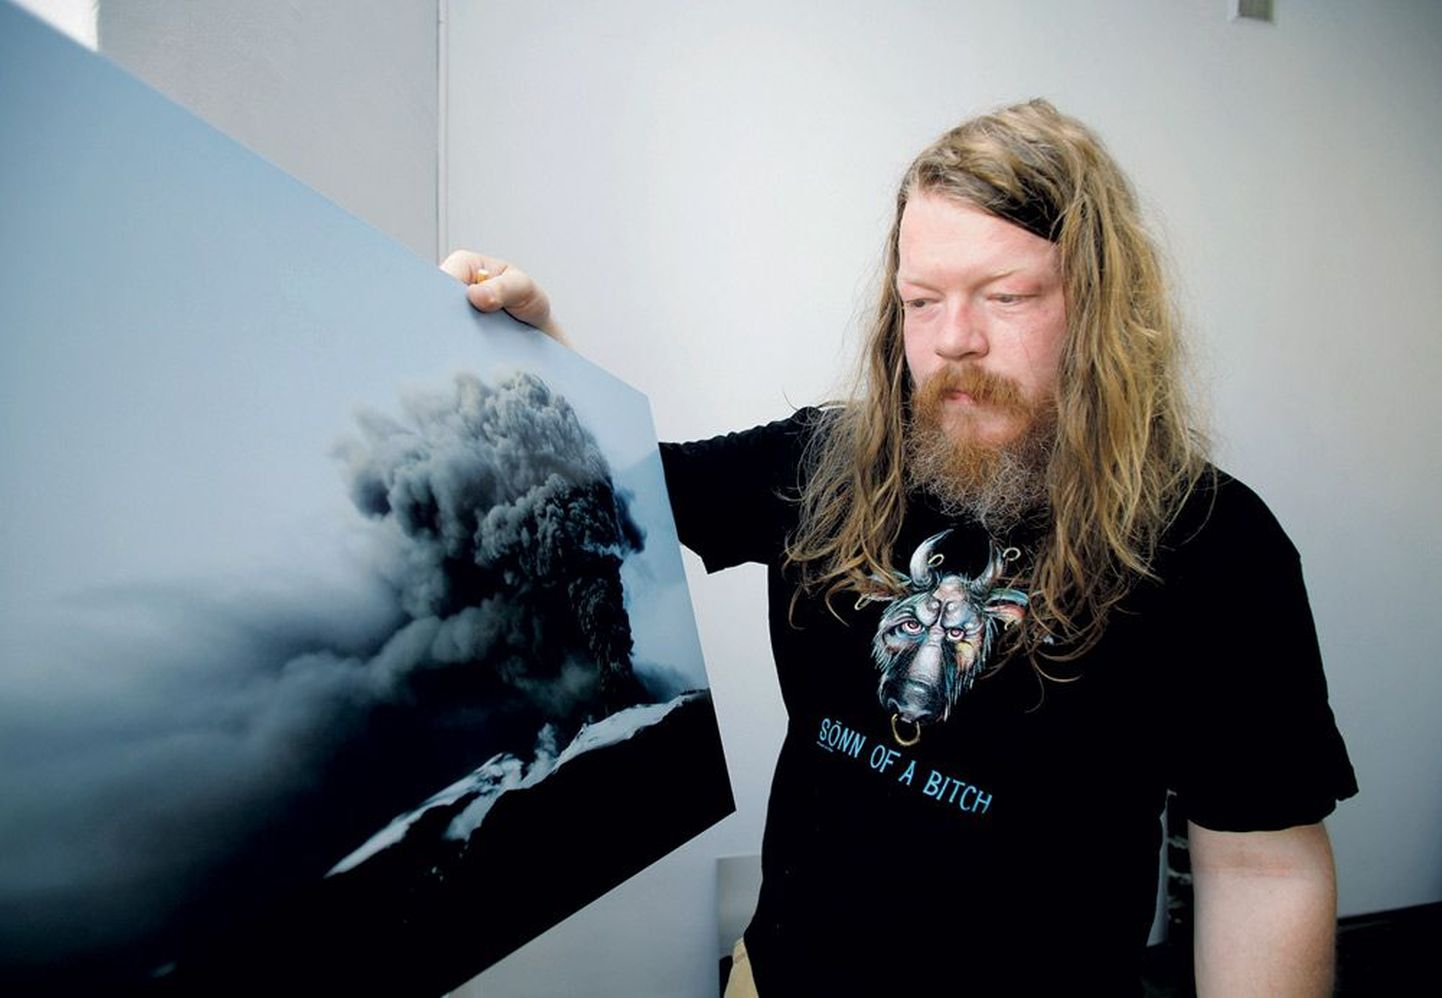 Islandi kutseline fotograaf Ingólfur Júlíusson (41) tõi Tartusse näha fotosid, mida ta on pildistanud kodumaal paari aasta jooksul kolme vulkaani purske aegu.